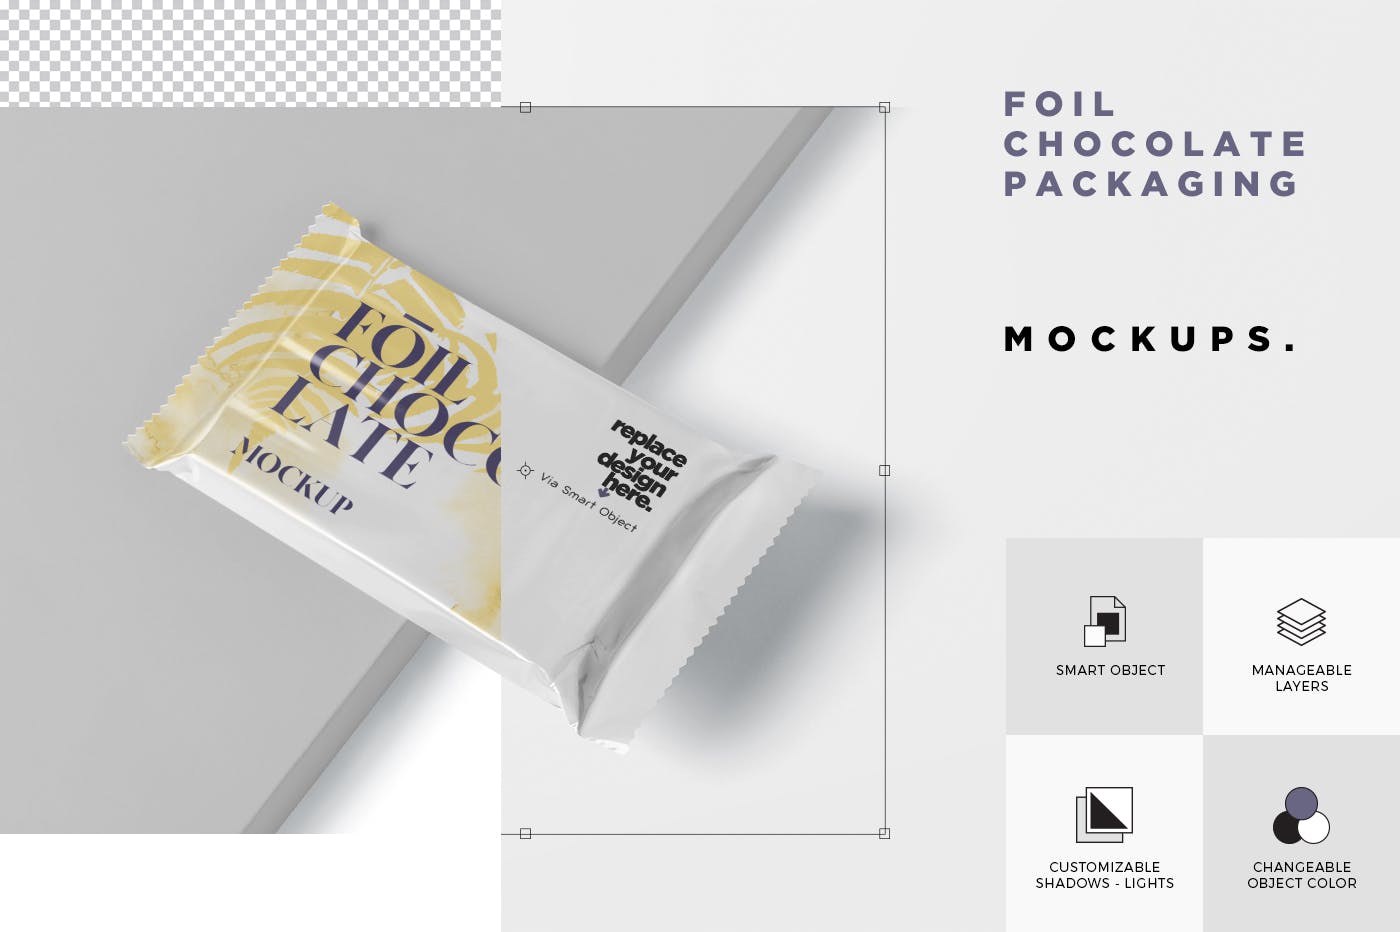 巧克力超薄铝箔纸包装设计效果图第一素材精选 Foil Chocolate Packaging Mockup – Slim Size插图(5)